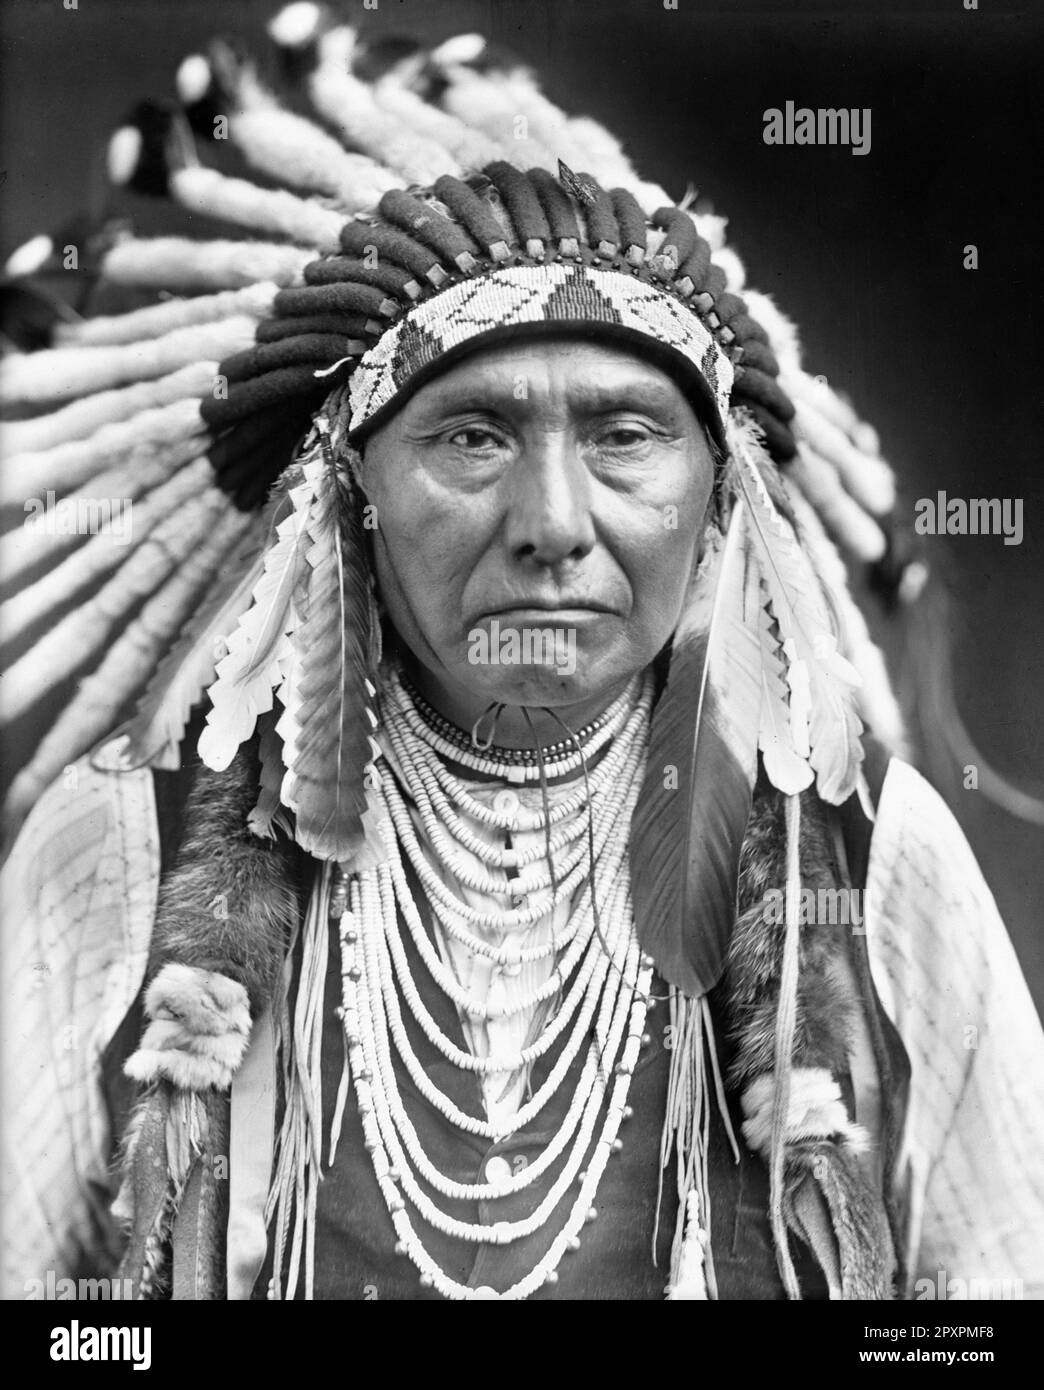 Capo Joseph. Ritratto del leader della band wal-lam-wat-kain (Wallowa) dei nativi americani Nez Perce, Hin-mah-Too-yah-lat-kekt, conosciuto popolarmente come Capo Joseph, giovane Joseph, o Joseph il giovane (1840-1904) da Edward Sheriff Curtis, 1903 Foto Stock